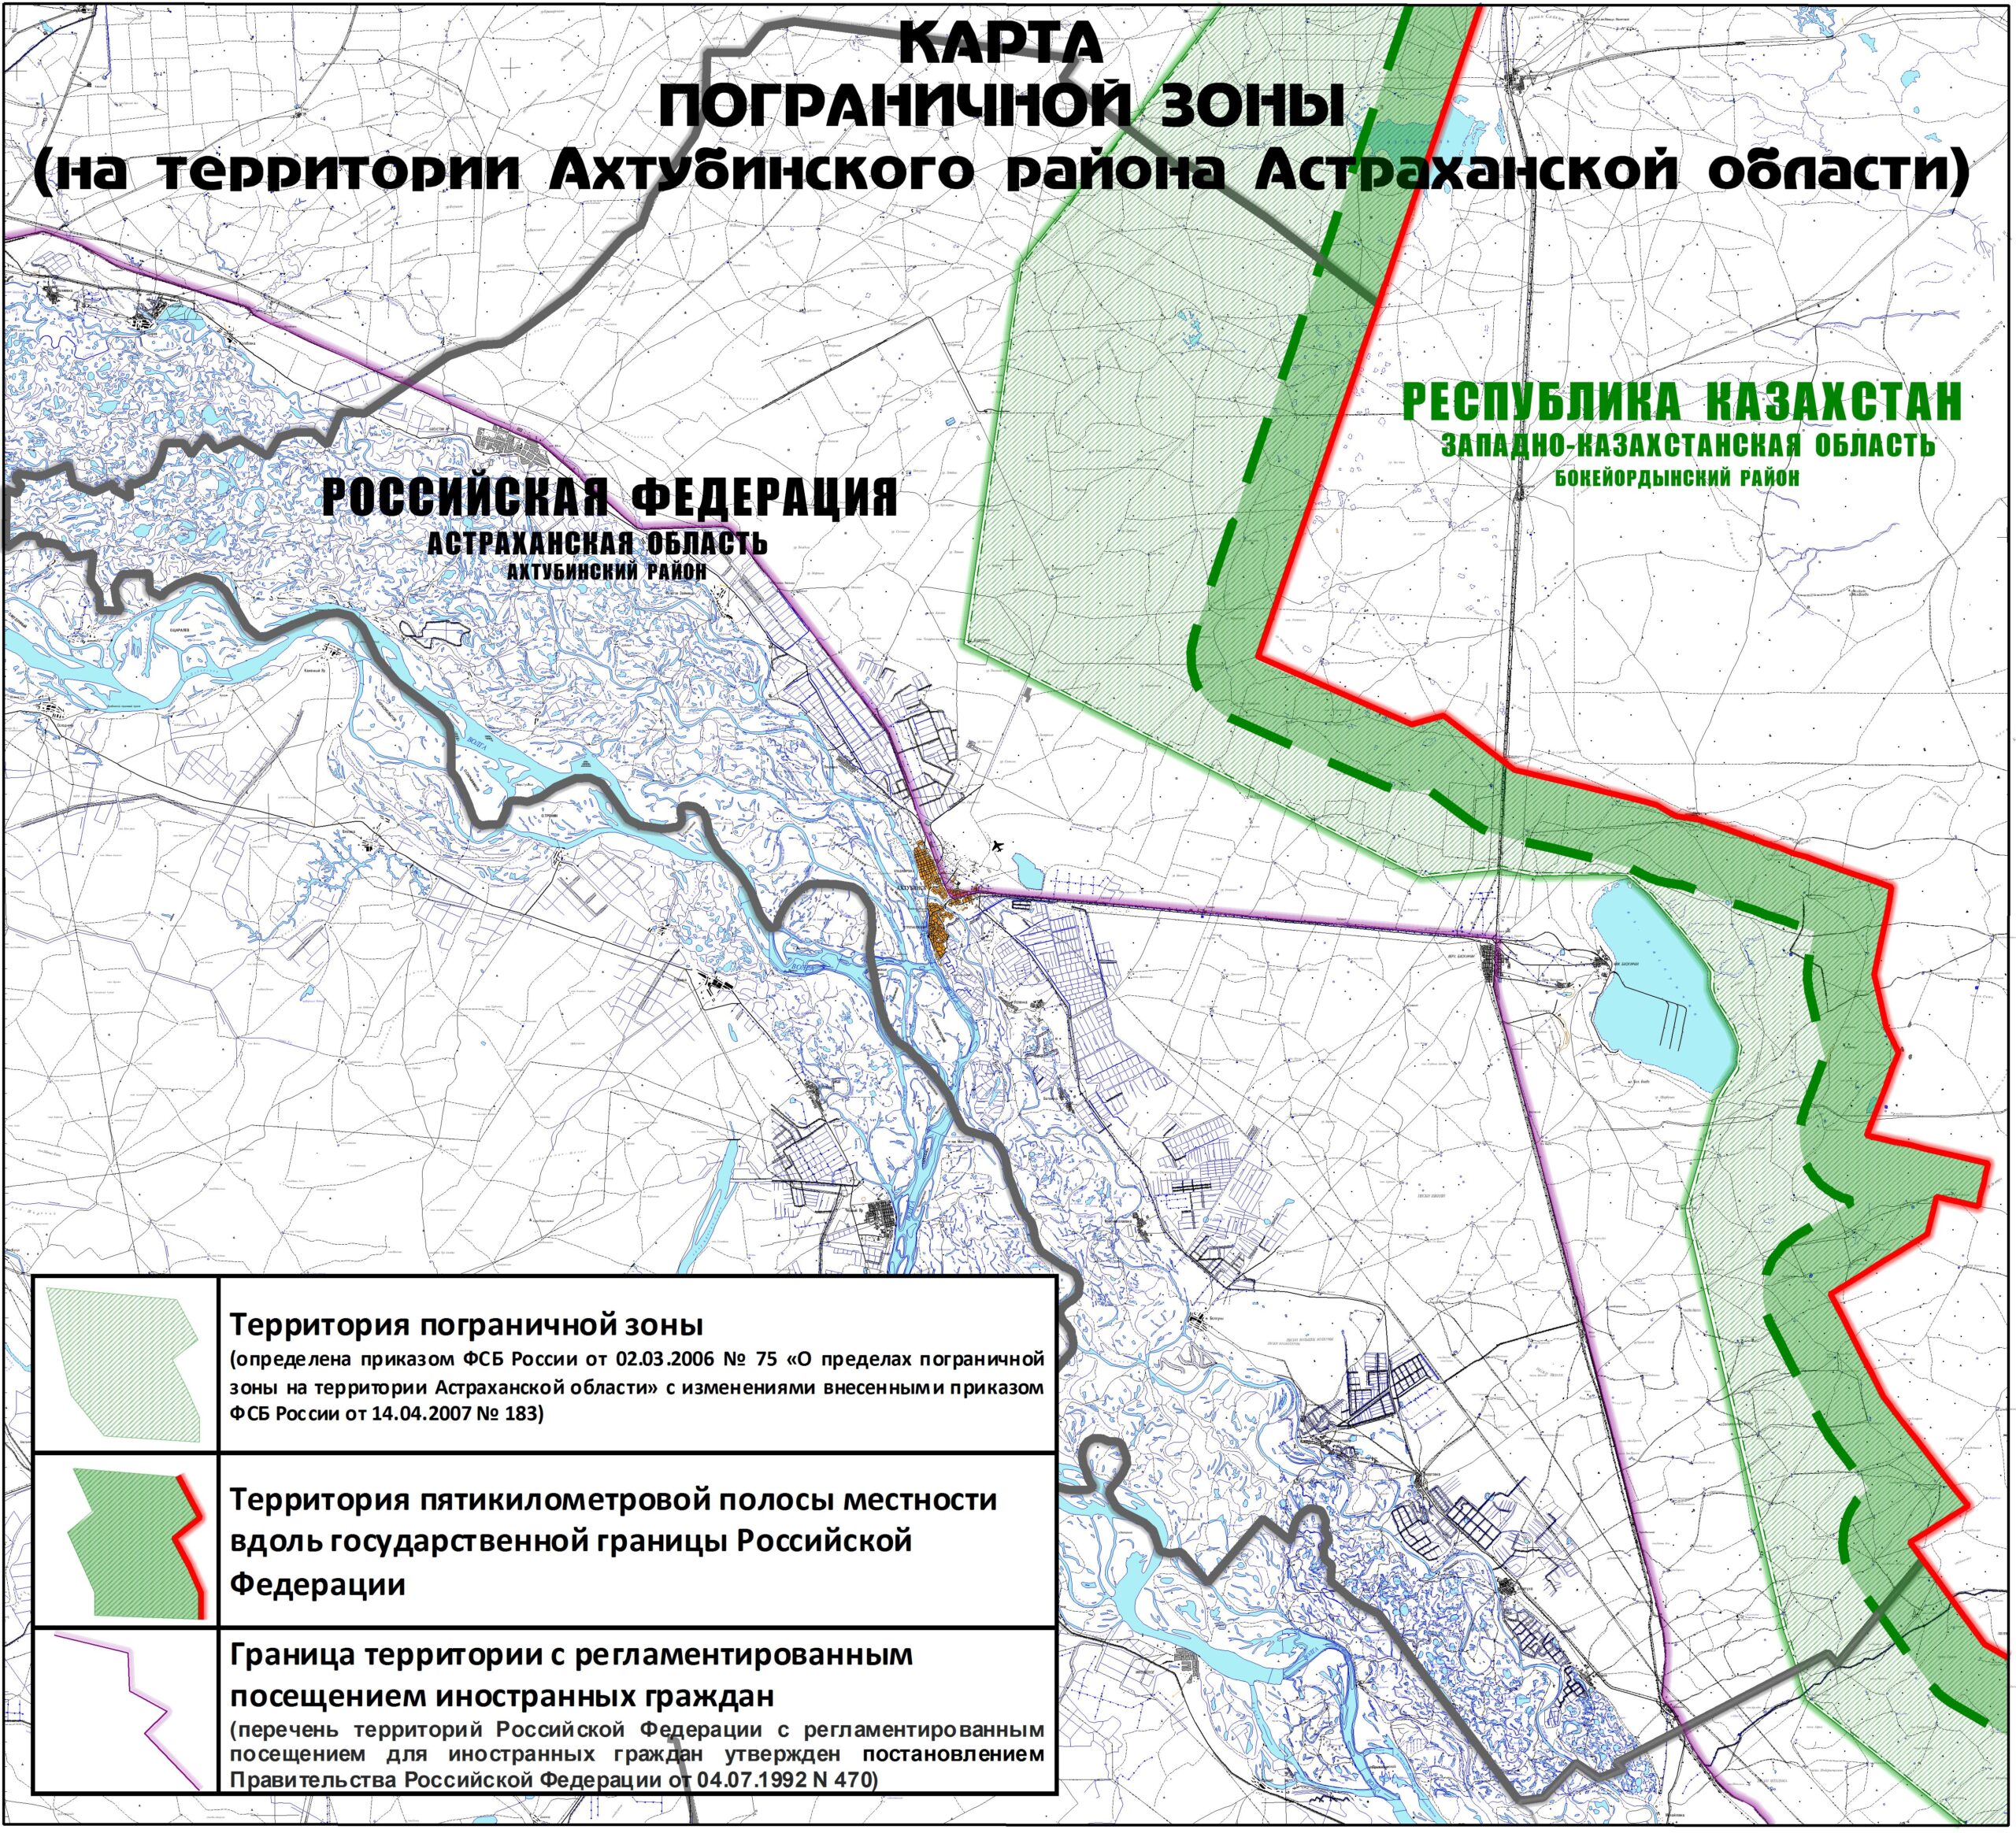 Пограничная зона это. Границы пограничной зоны Астраханской области. Пограничная зона Астраханской области. Пограничная зона в Астраханской области на карте России. Границы пограничной зоны в Астраханской области на карте.